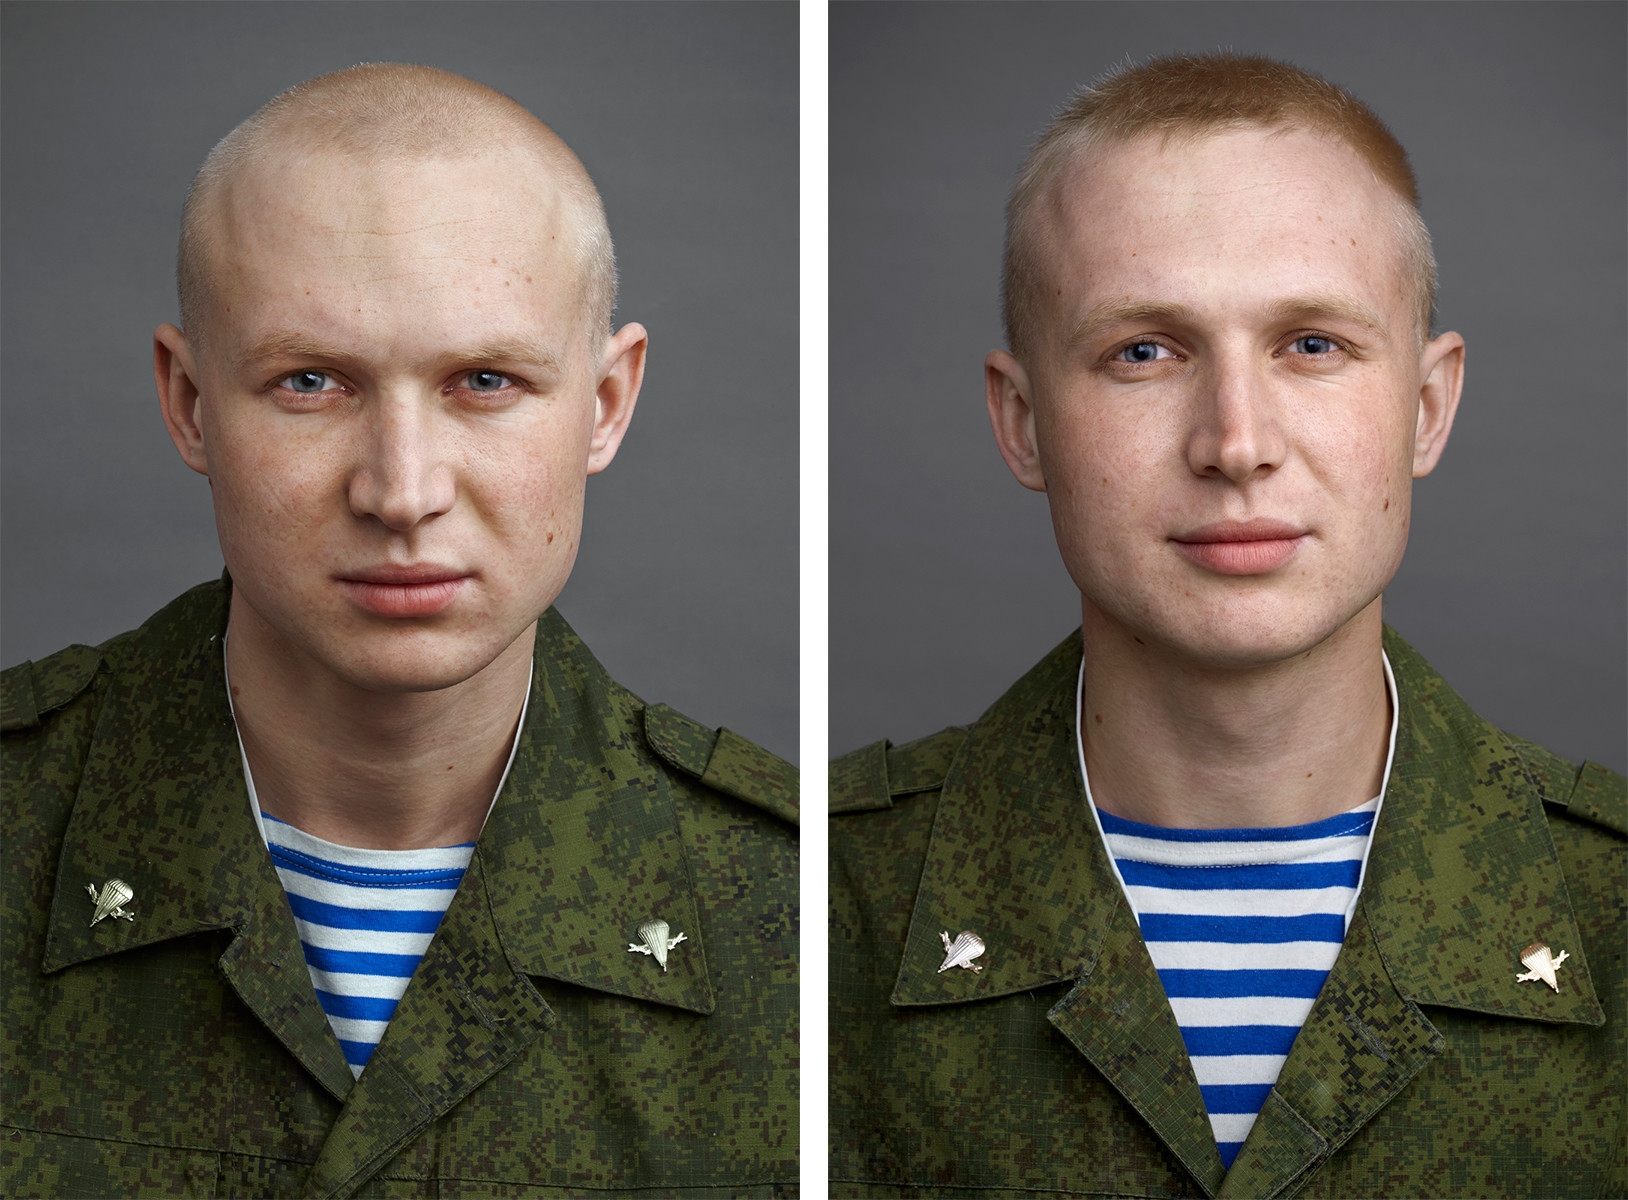 Характер русского солдата